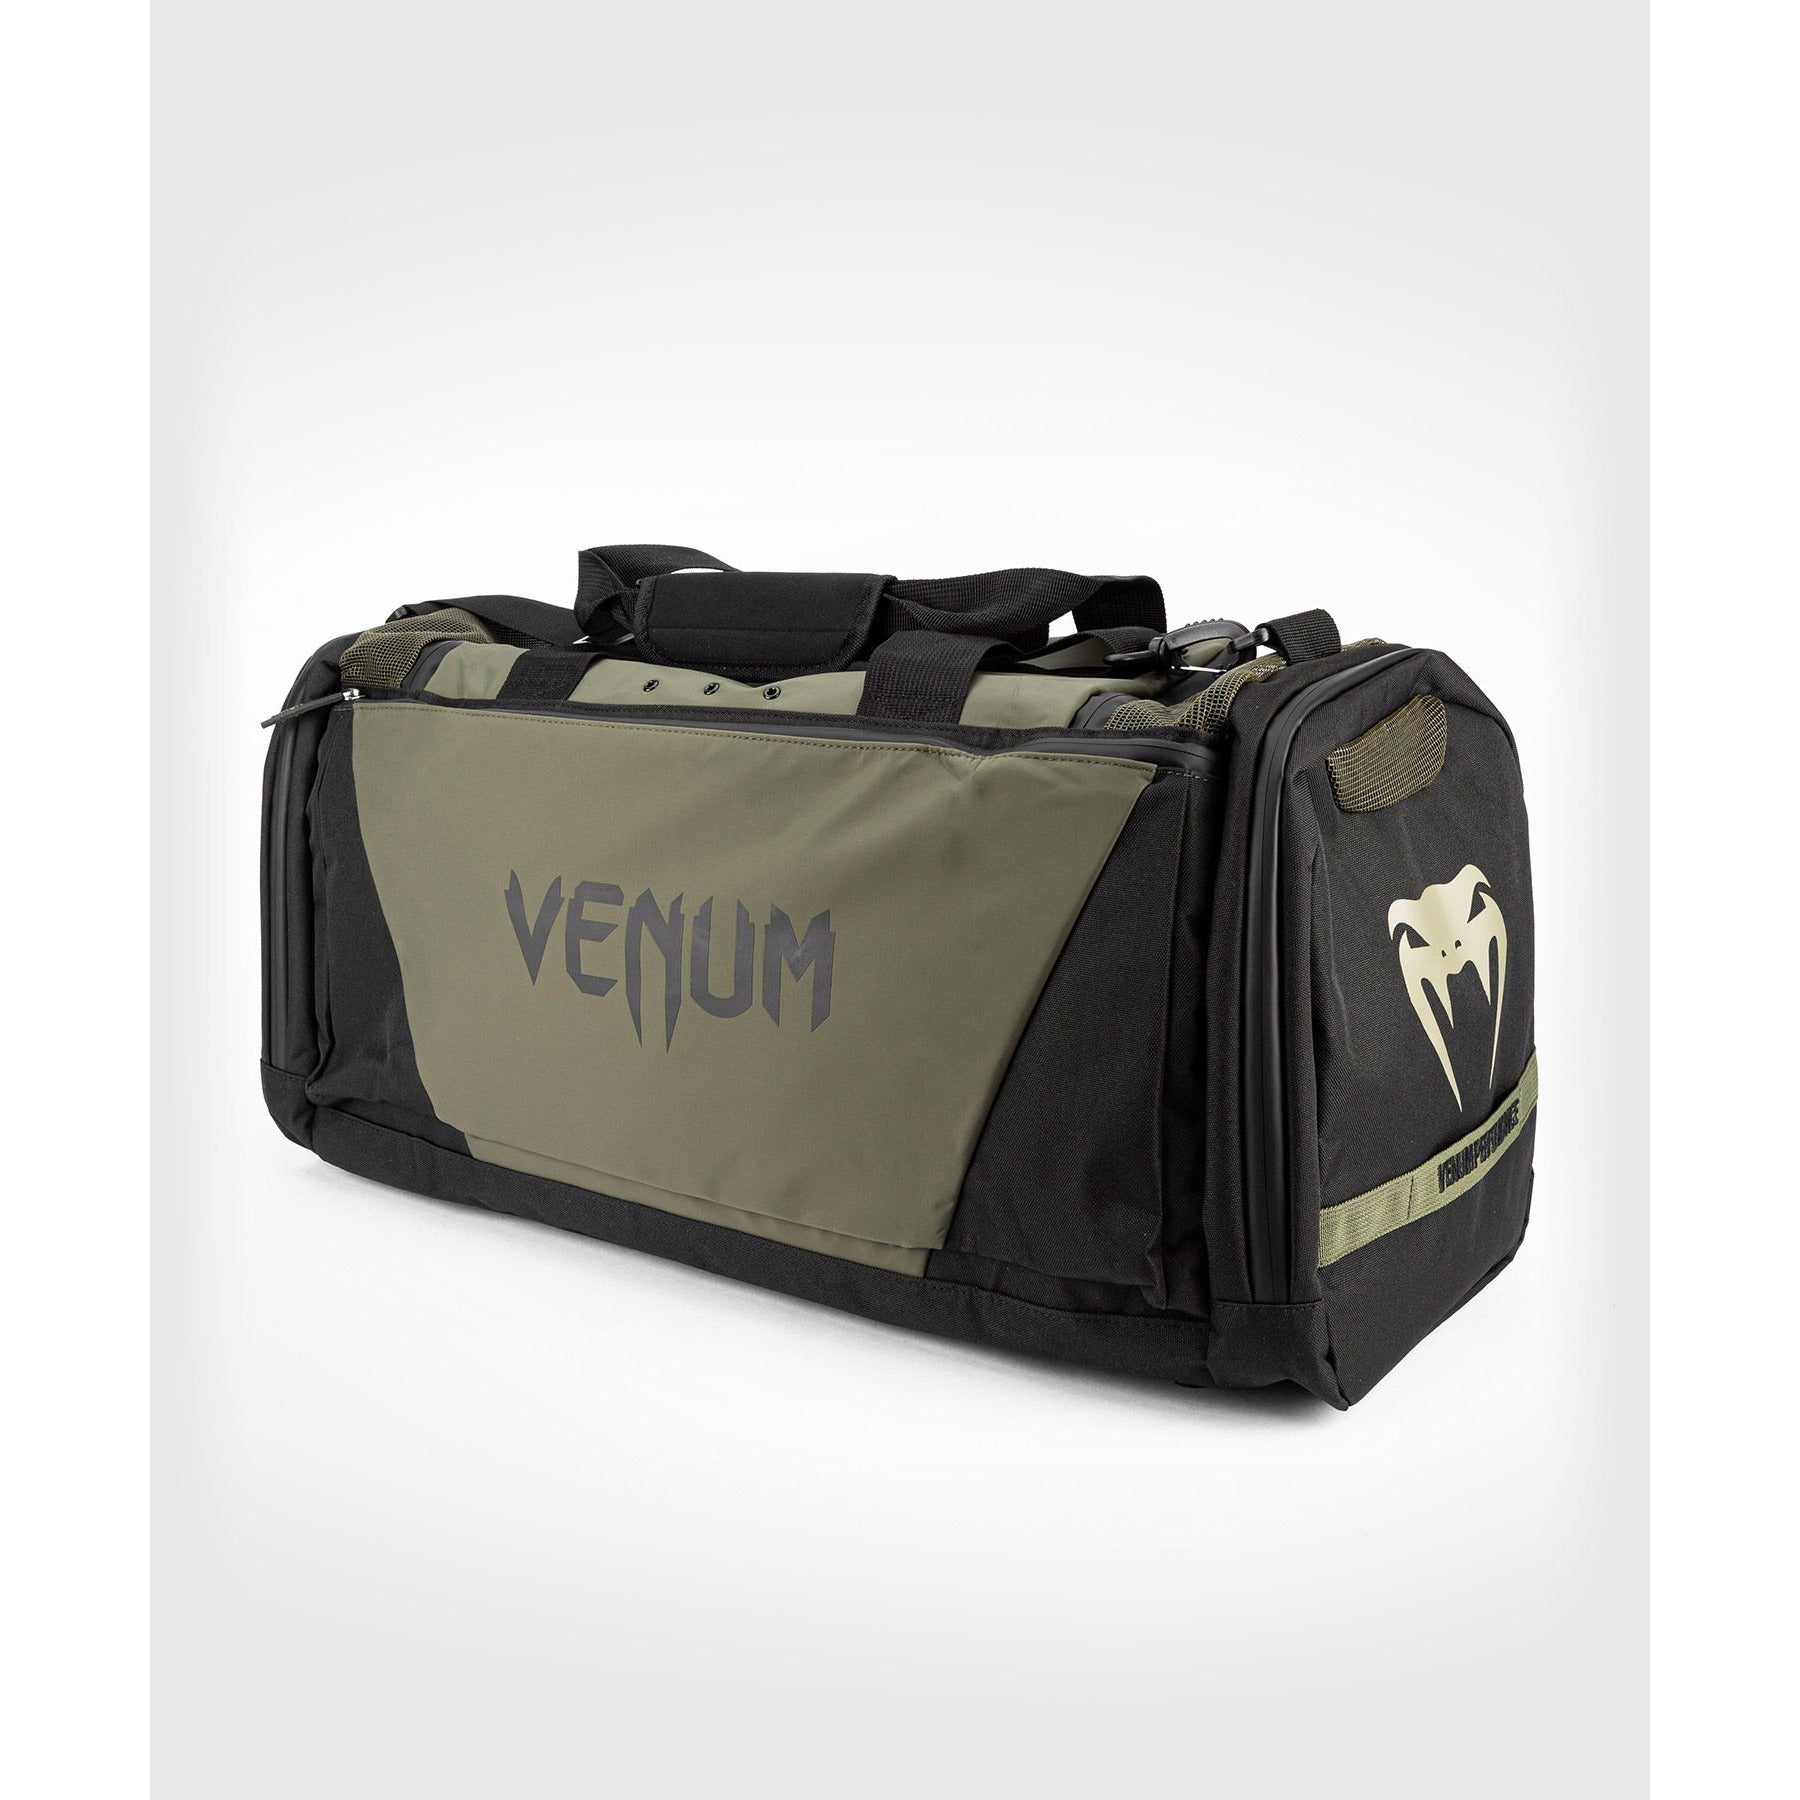 Venum Trainer Lite Evo Sports Bag - Khaki/Black